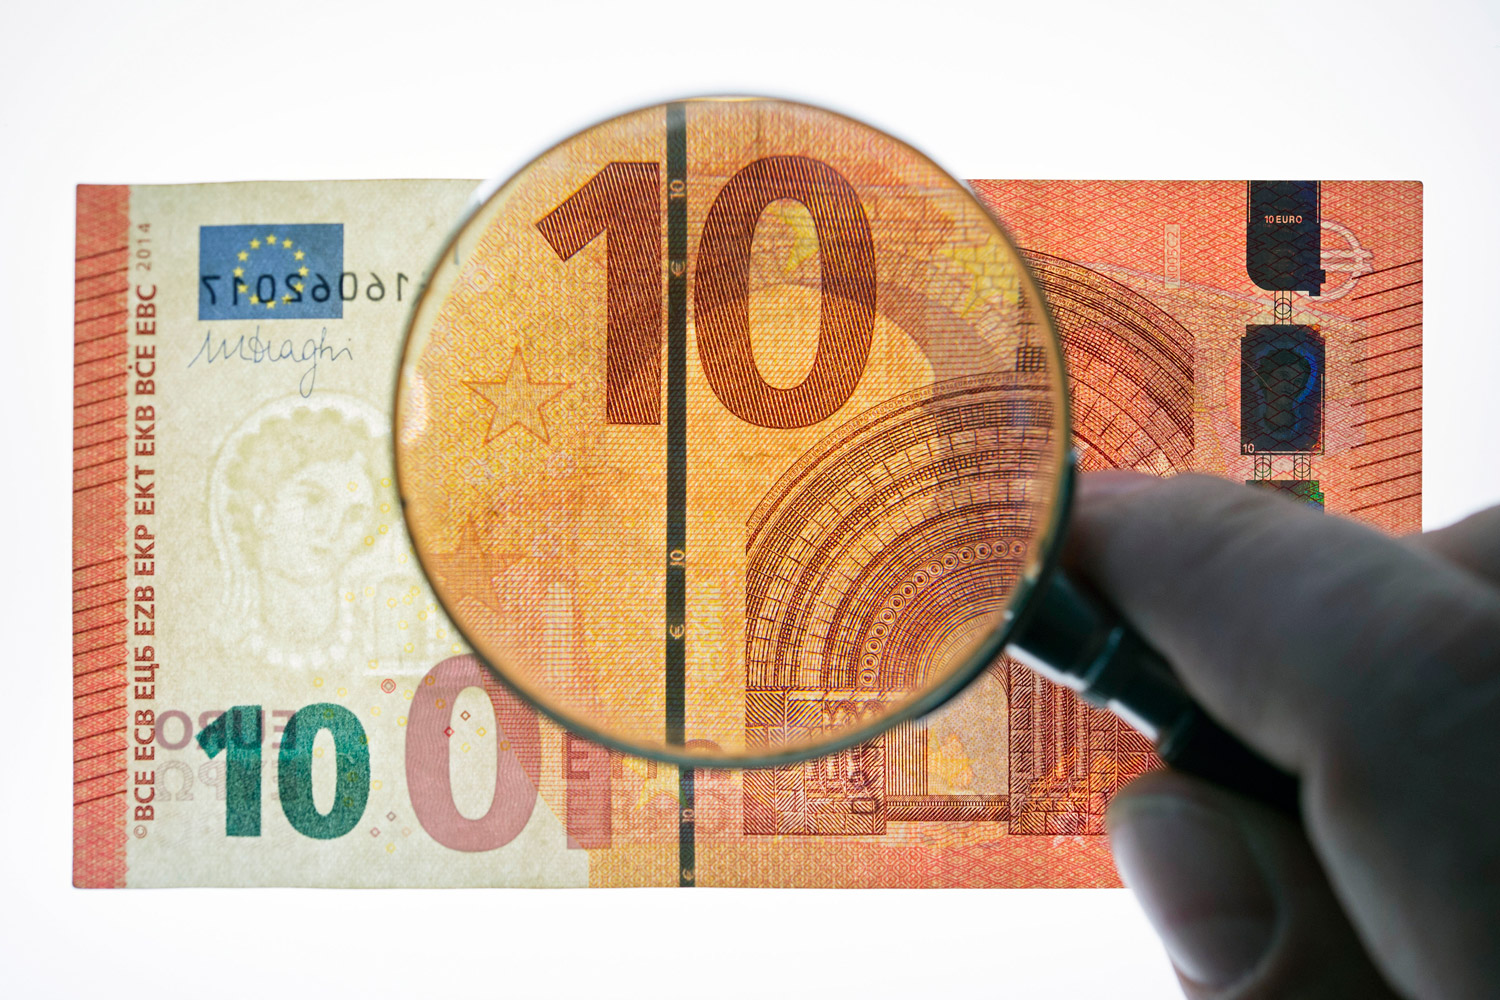 Los nuevos billetes de diez euros correspondientes a la serie 'Europa' comienzan a circular. Así son